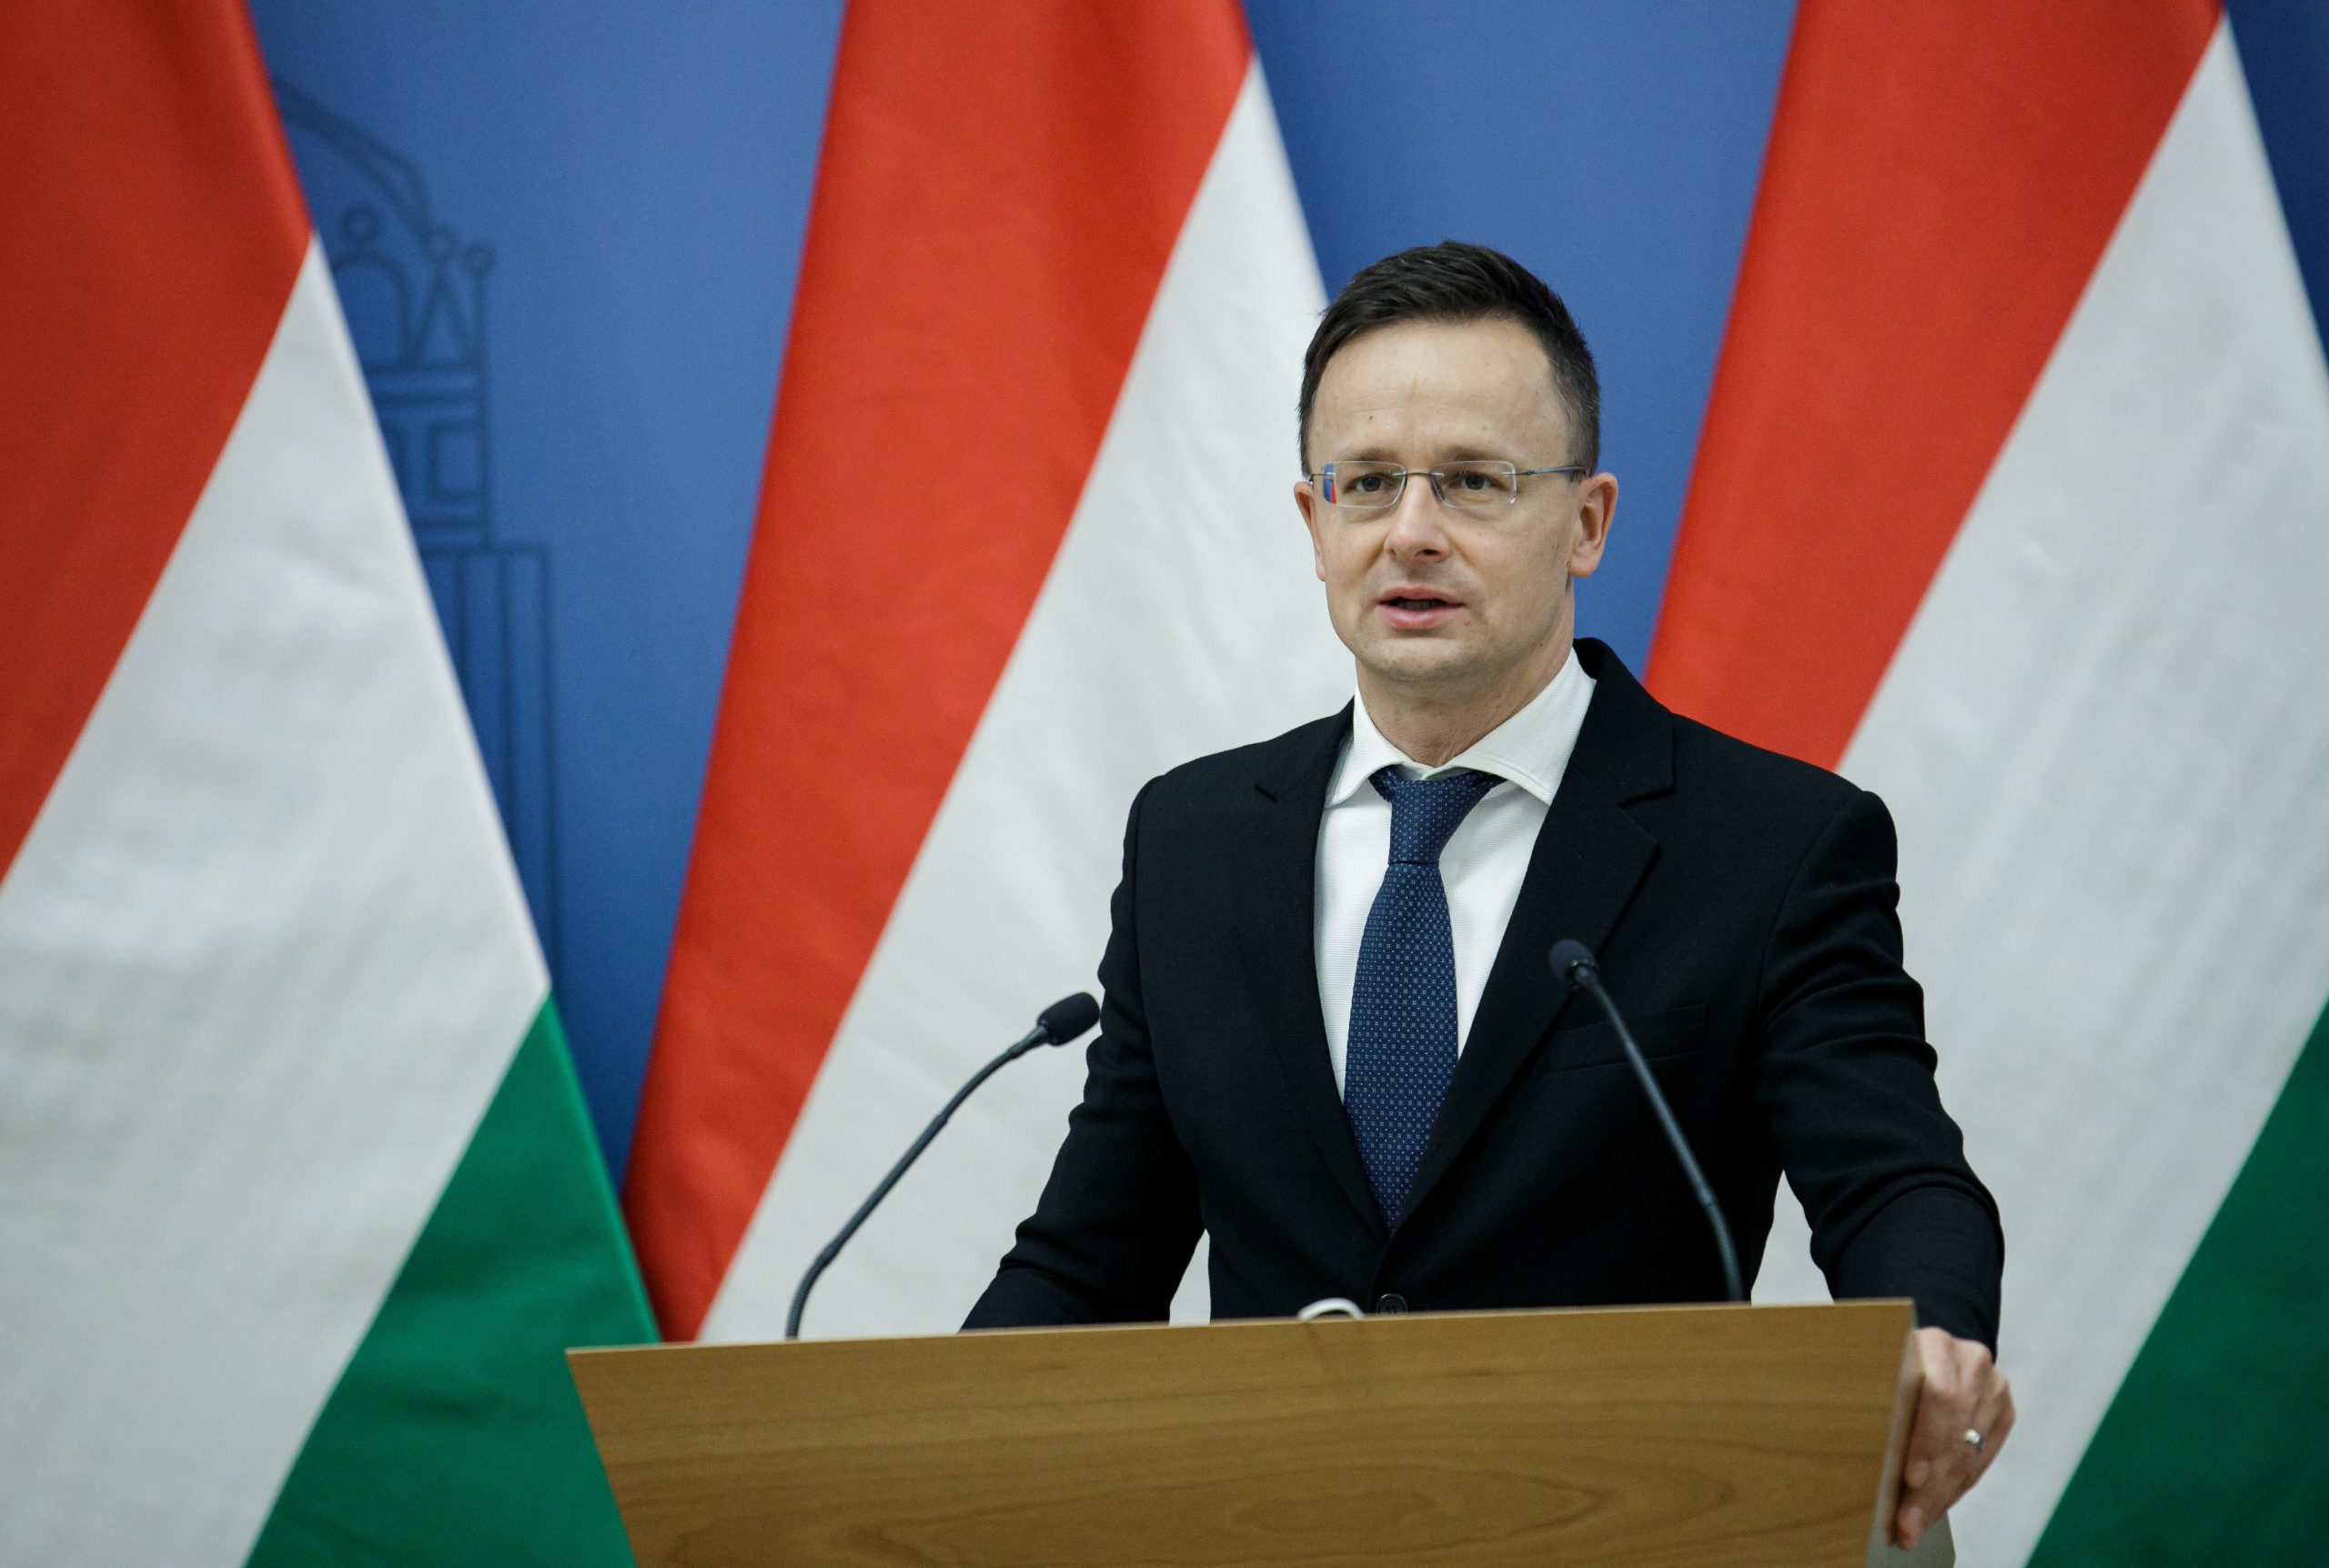 FM Szijjártó: Hungary and Germany 